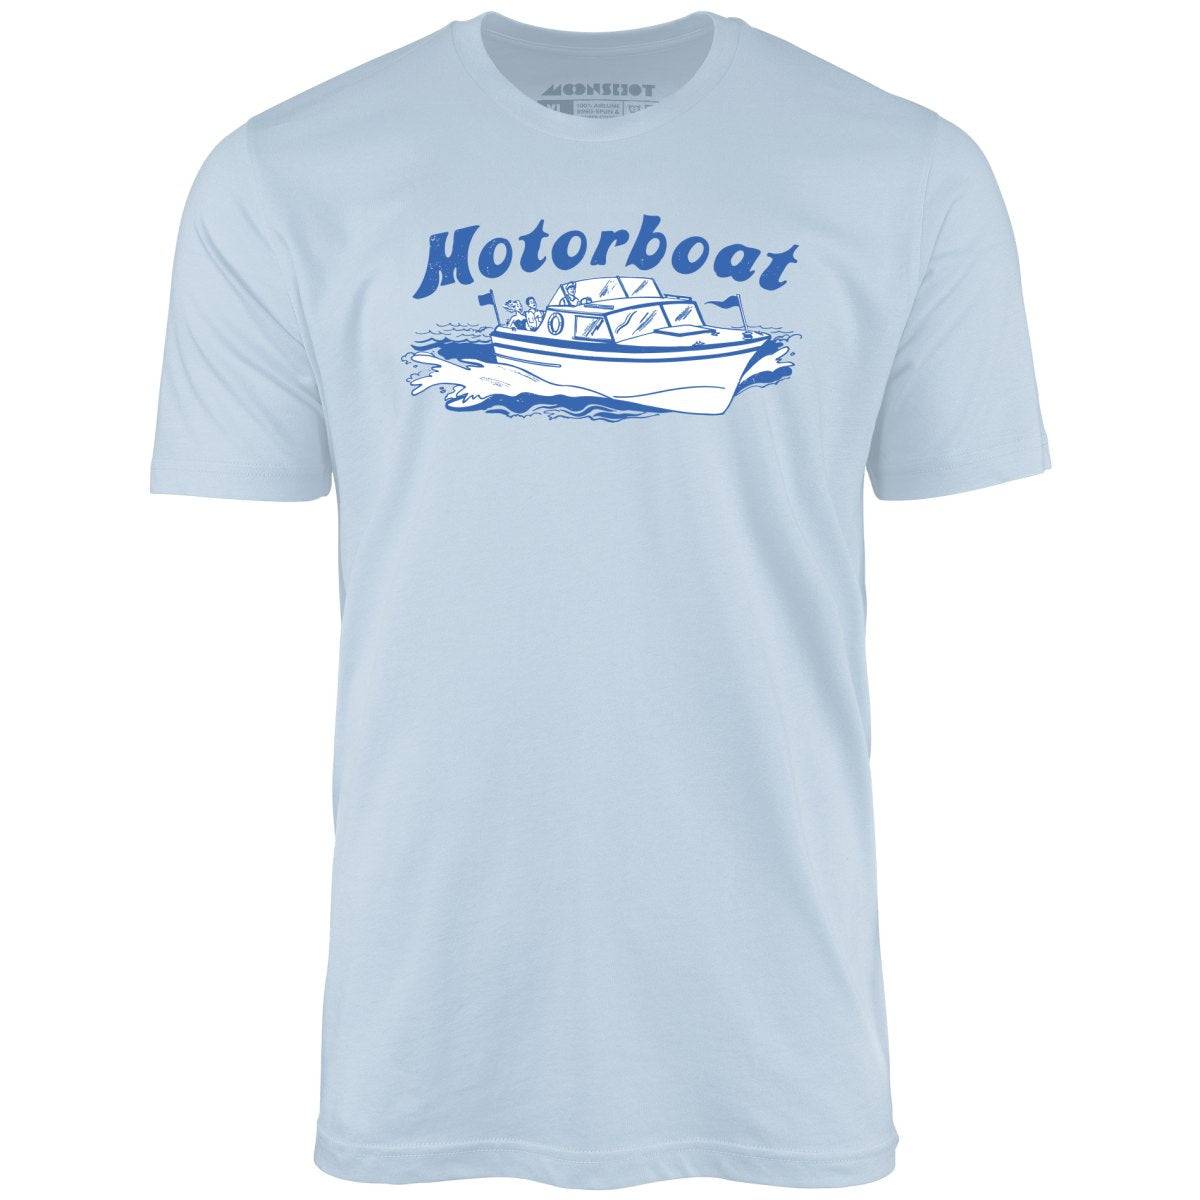 Motorboat - Unisex T-Shirt